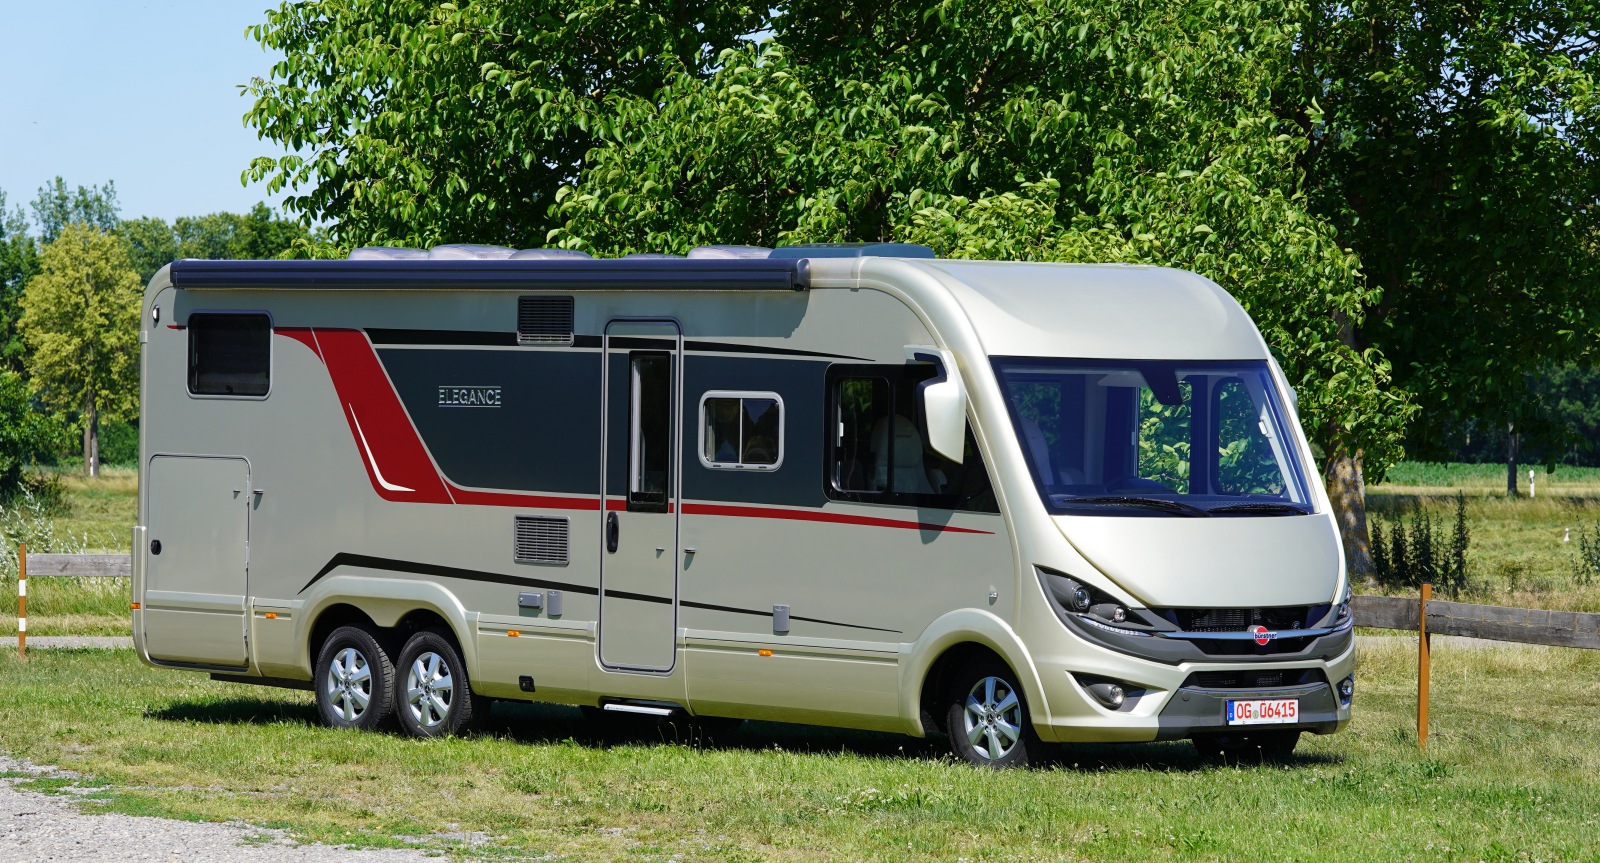 Bürstner présente de nouveaux accessoires exclusifs pour ses camping-cars -  Équipements et accessoires